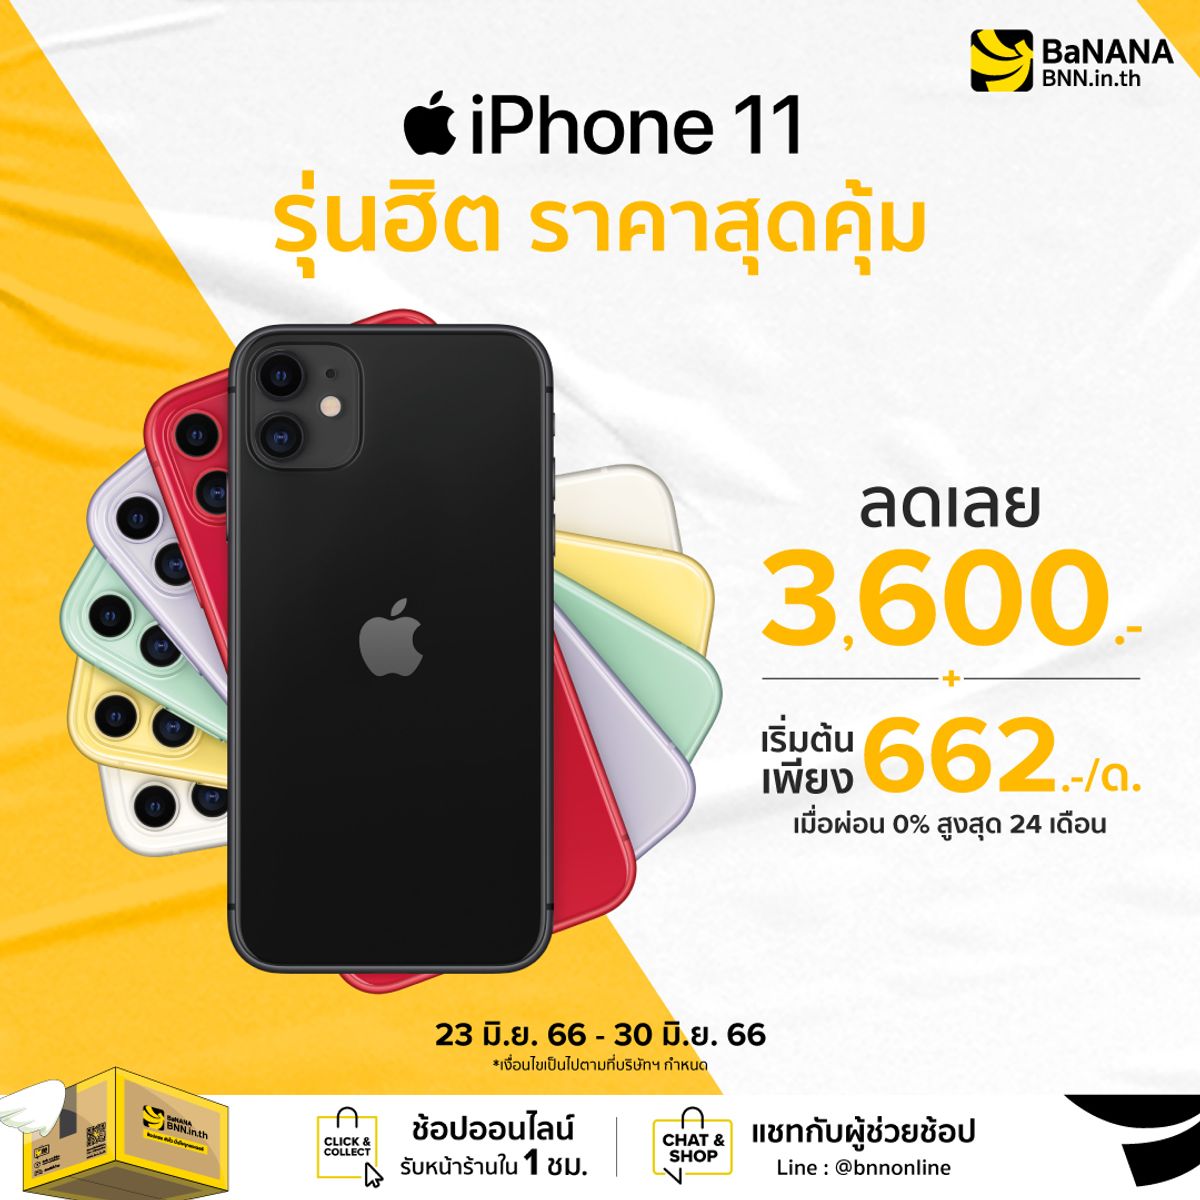 iPhone 11 ราคาดี ผ่อน 0% สูงสุด 24 เดือน BaNANA Online